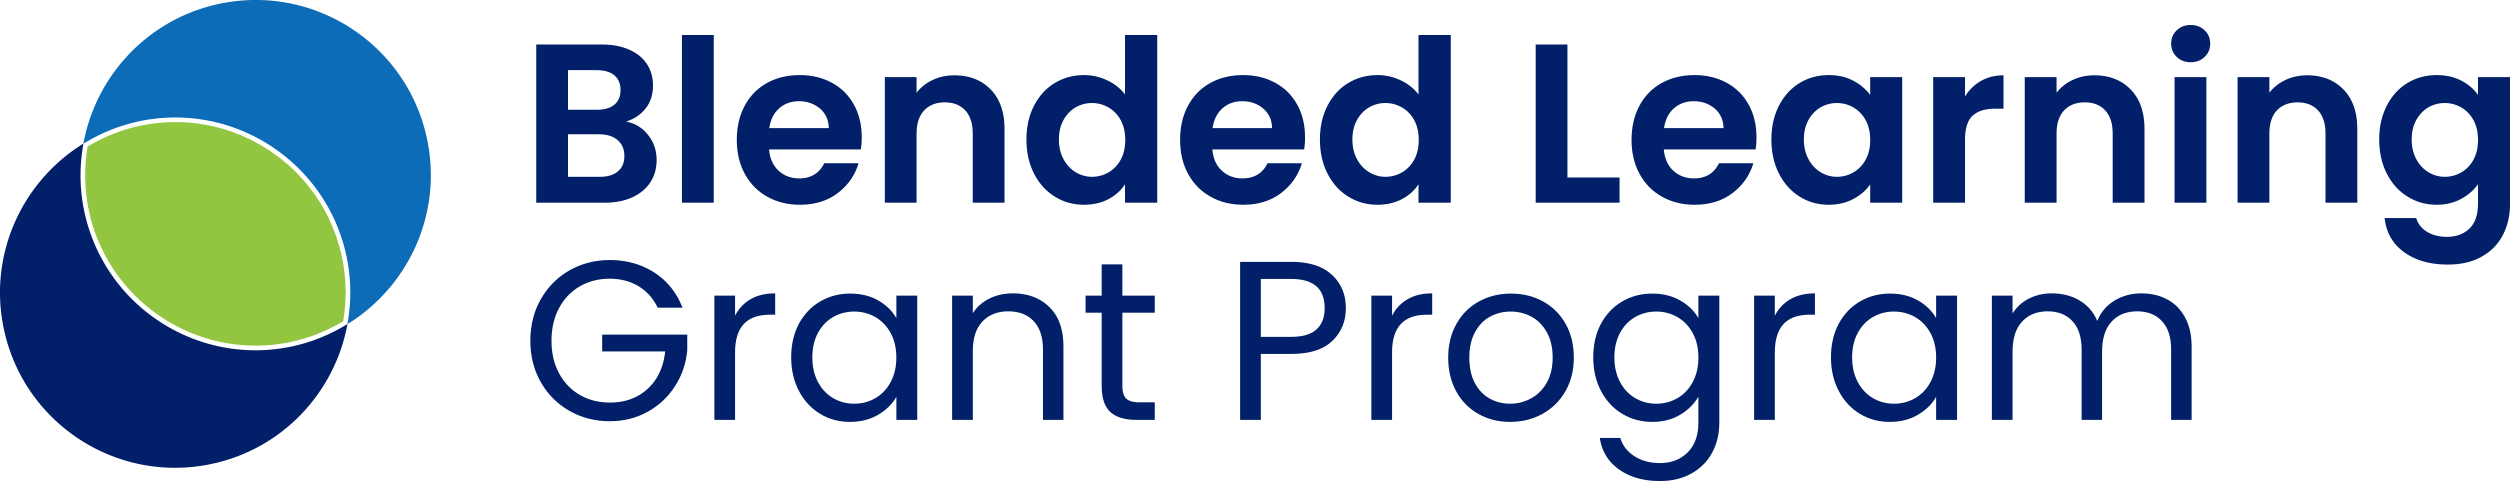 Blended Learning Grant program logo